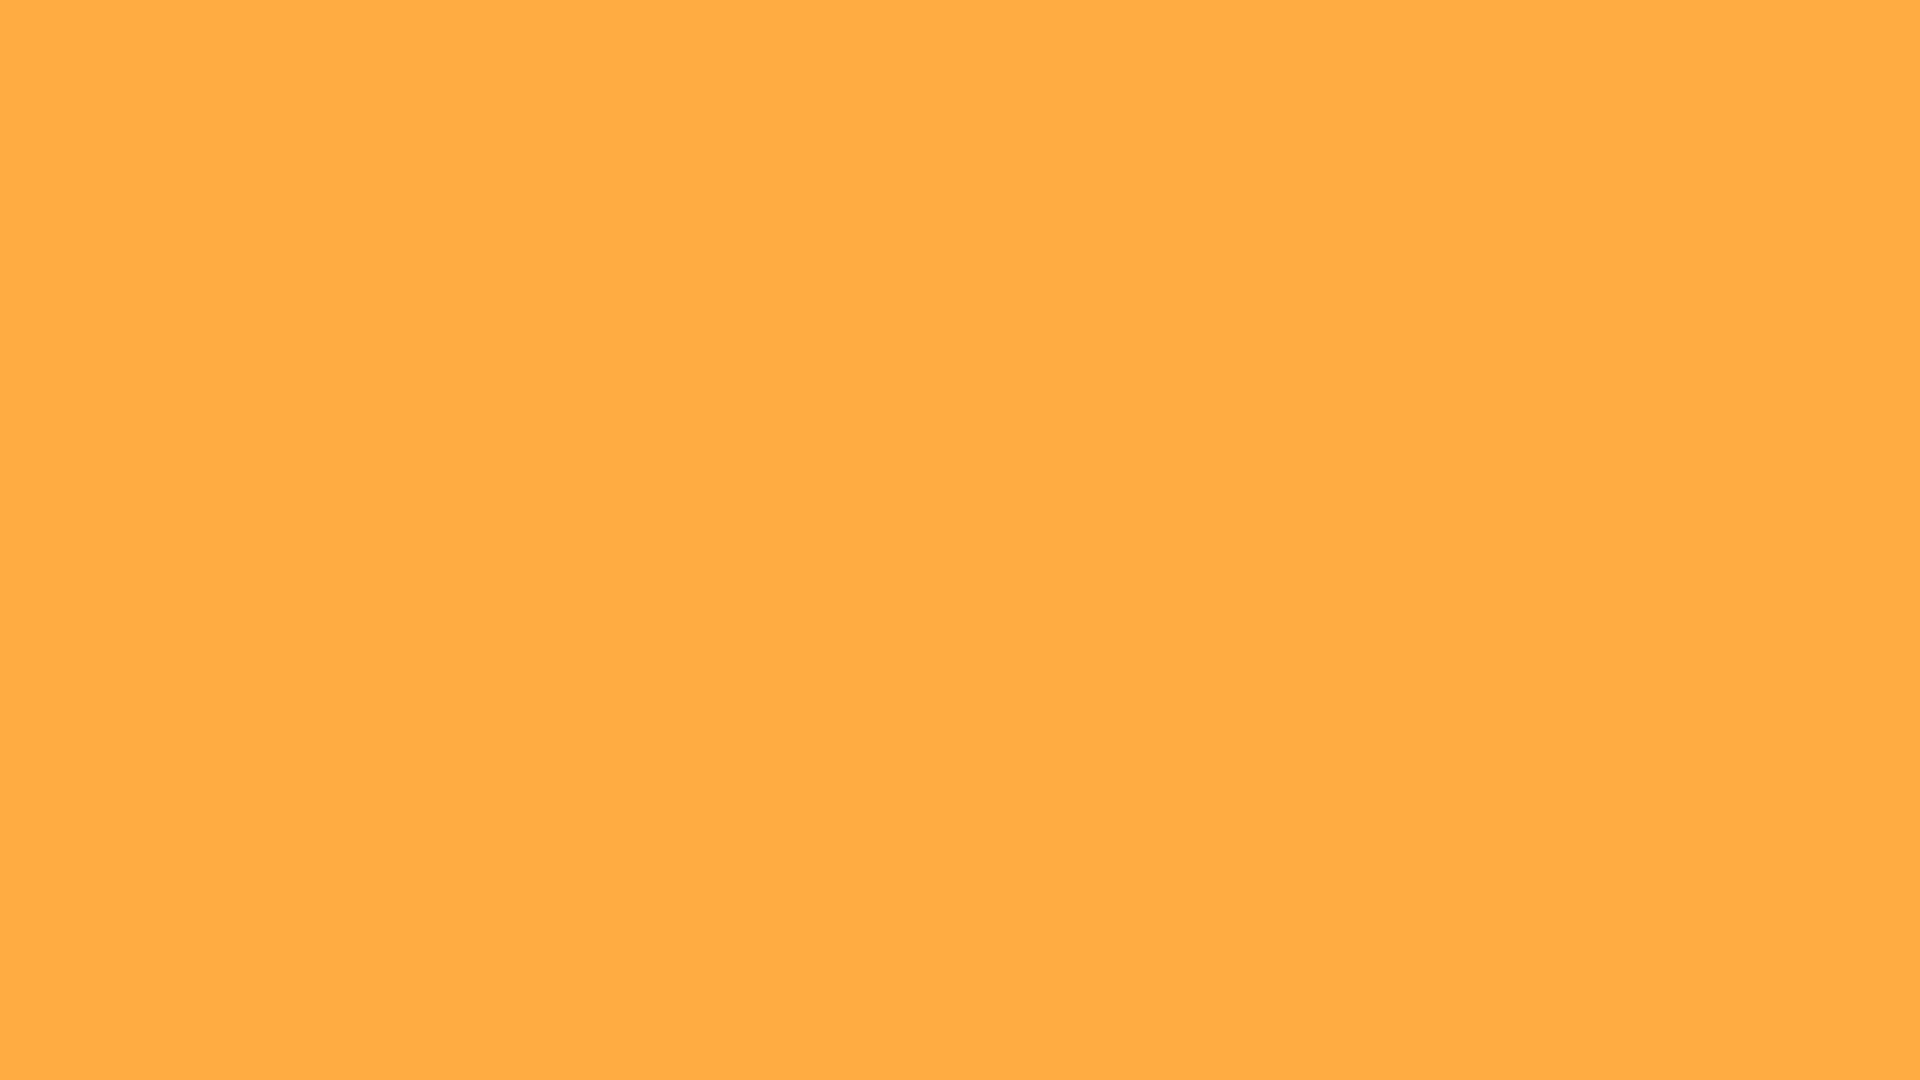 Đón nhận hình nền màu cam vàng đậm đẹp mắt 1920x1080, một chất liệu đẹp không thể bỏ qua. Hình ảnh sẽ đem lại cho bạn cảm giác sạch sẽ và rực rỡ.